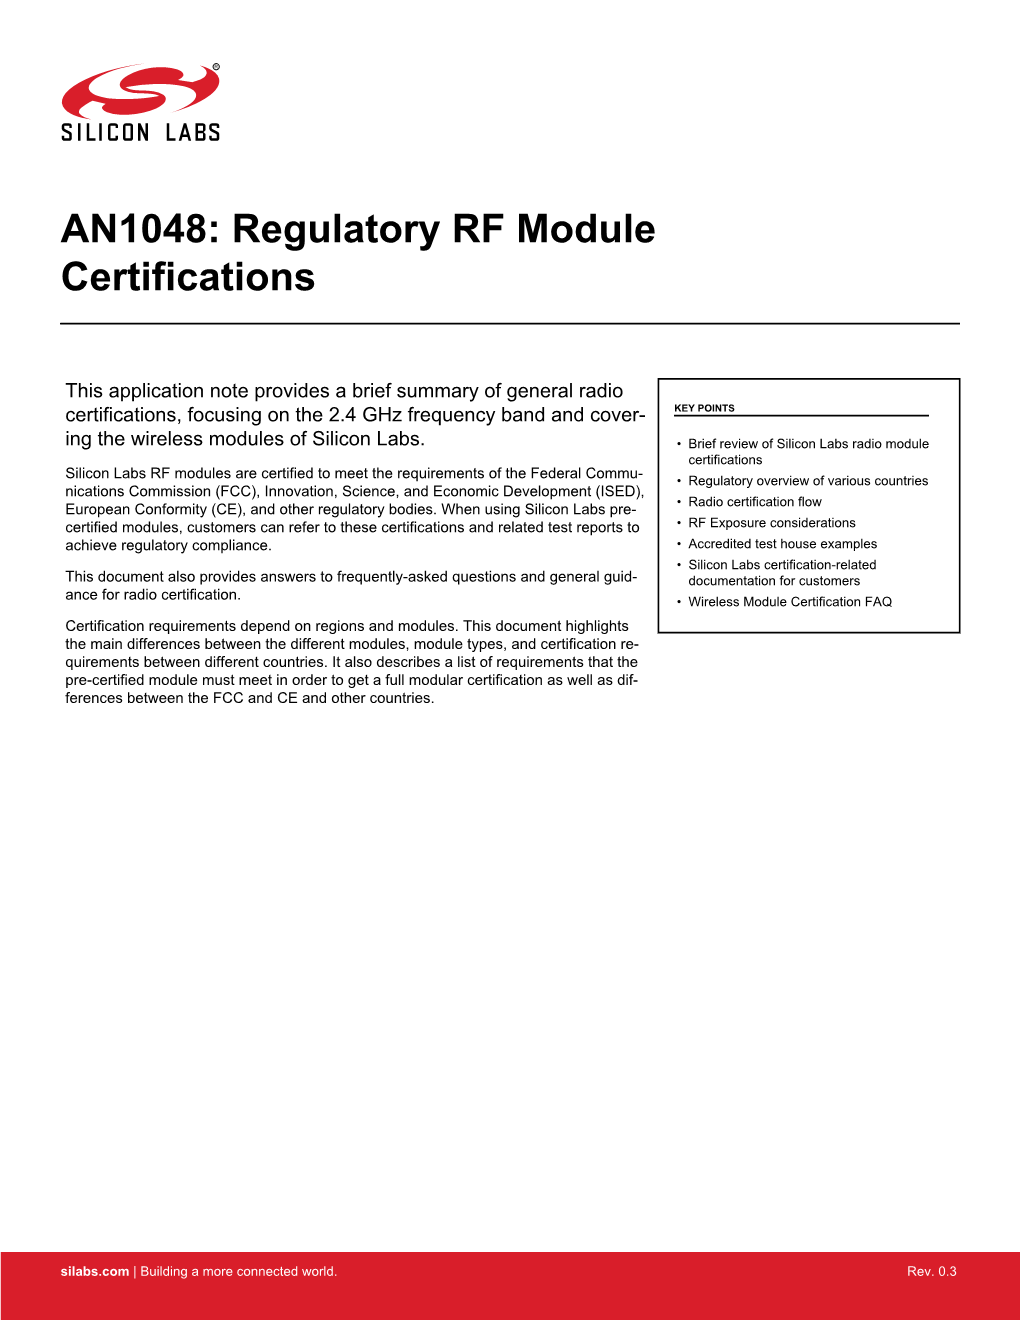 AN1048: Regulatory RF Module Certifications